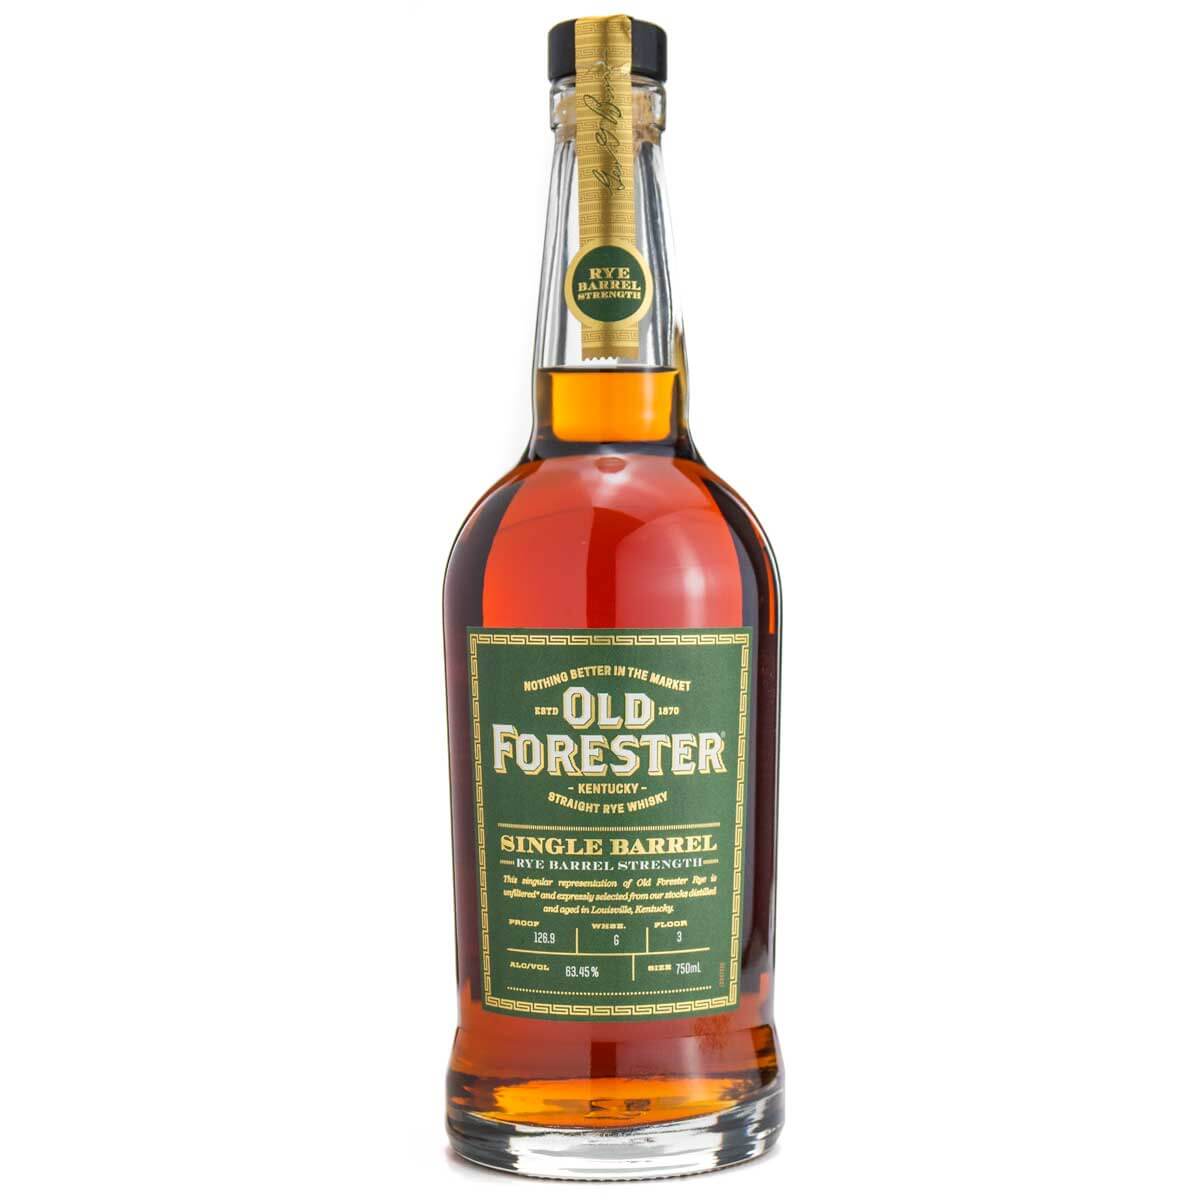 Old Forester Rye Single Barrel bottle